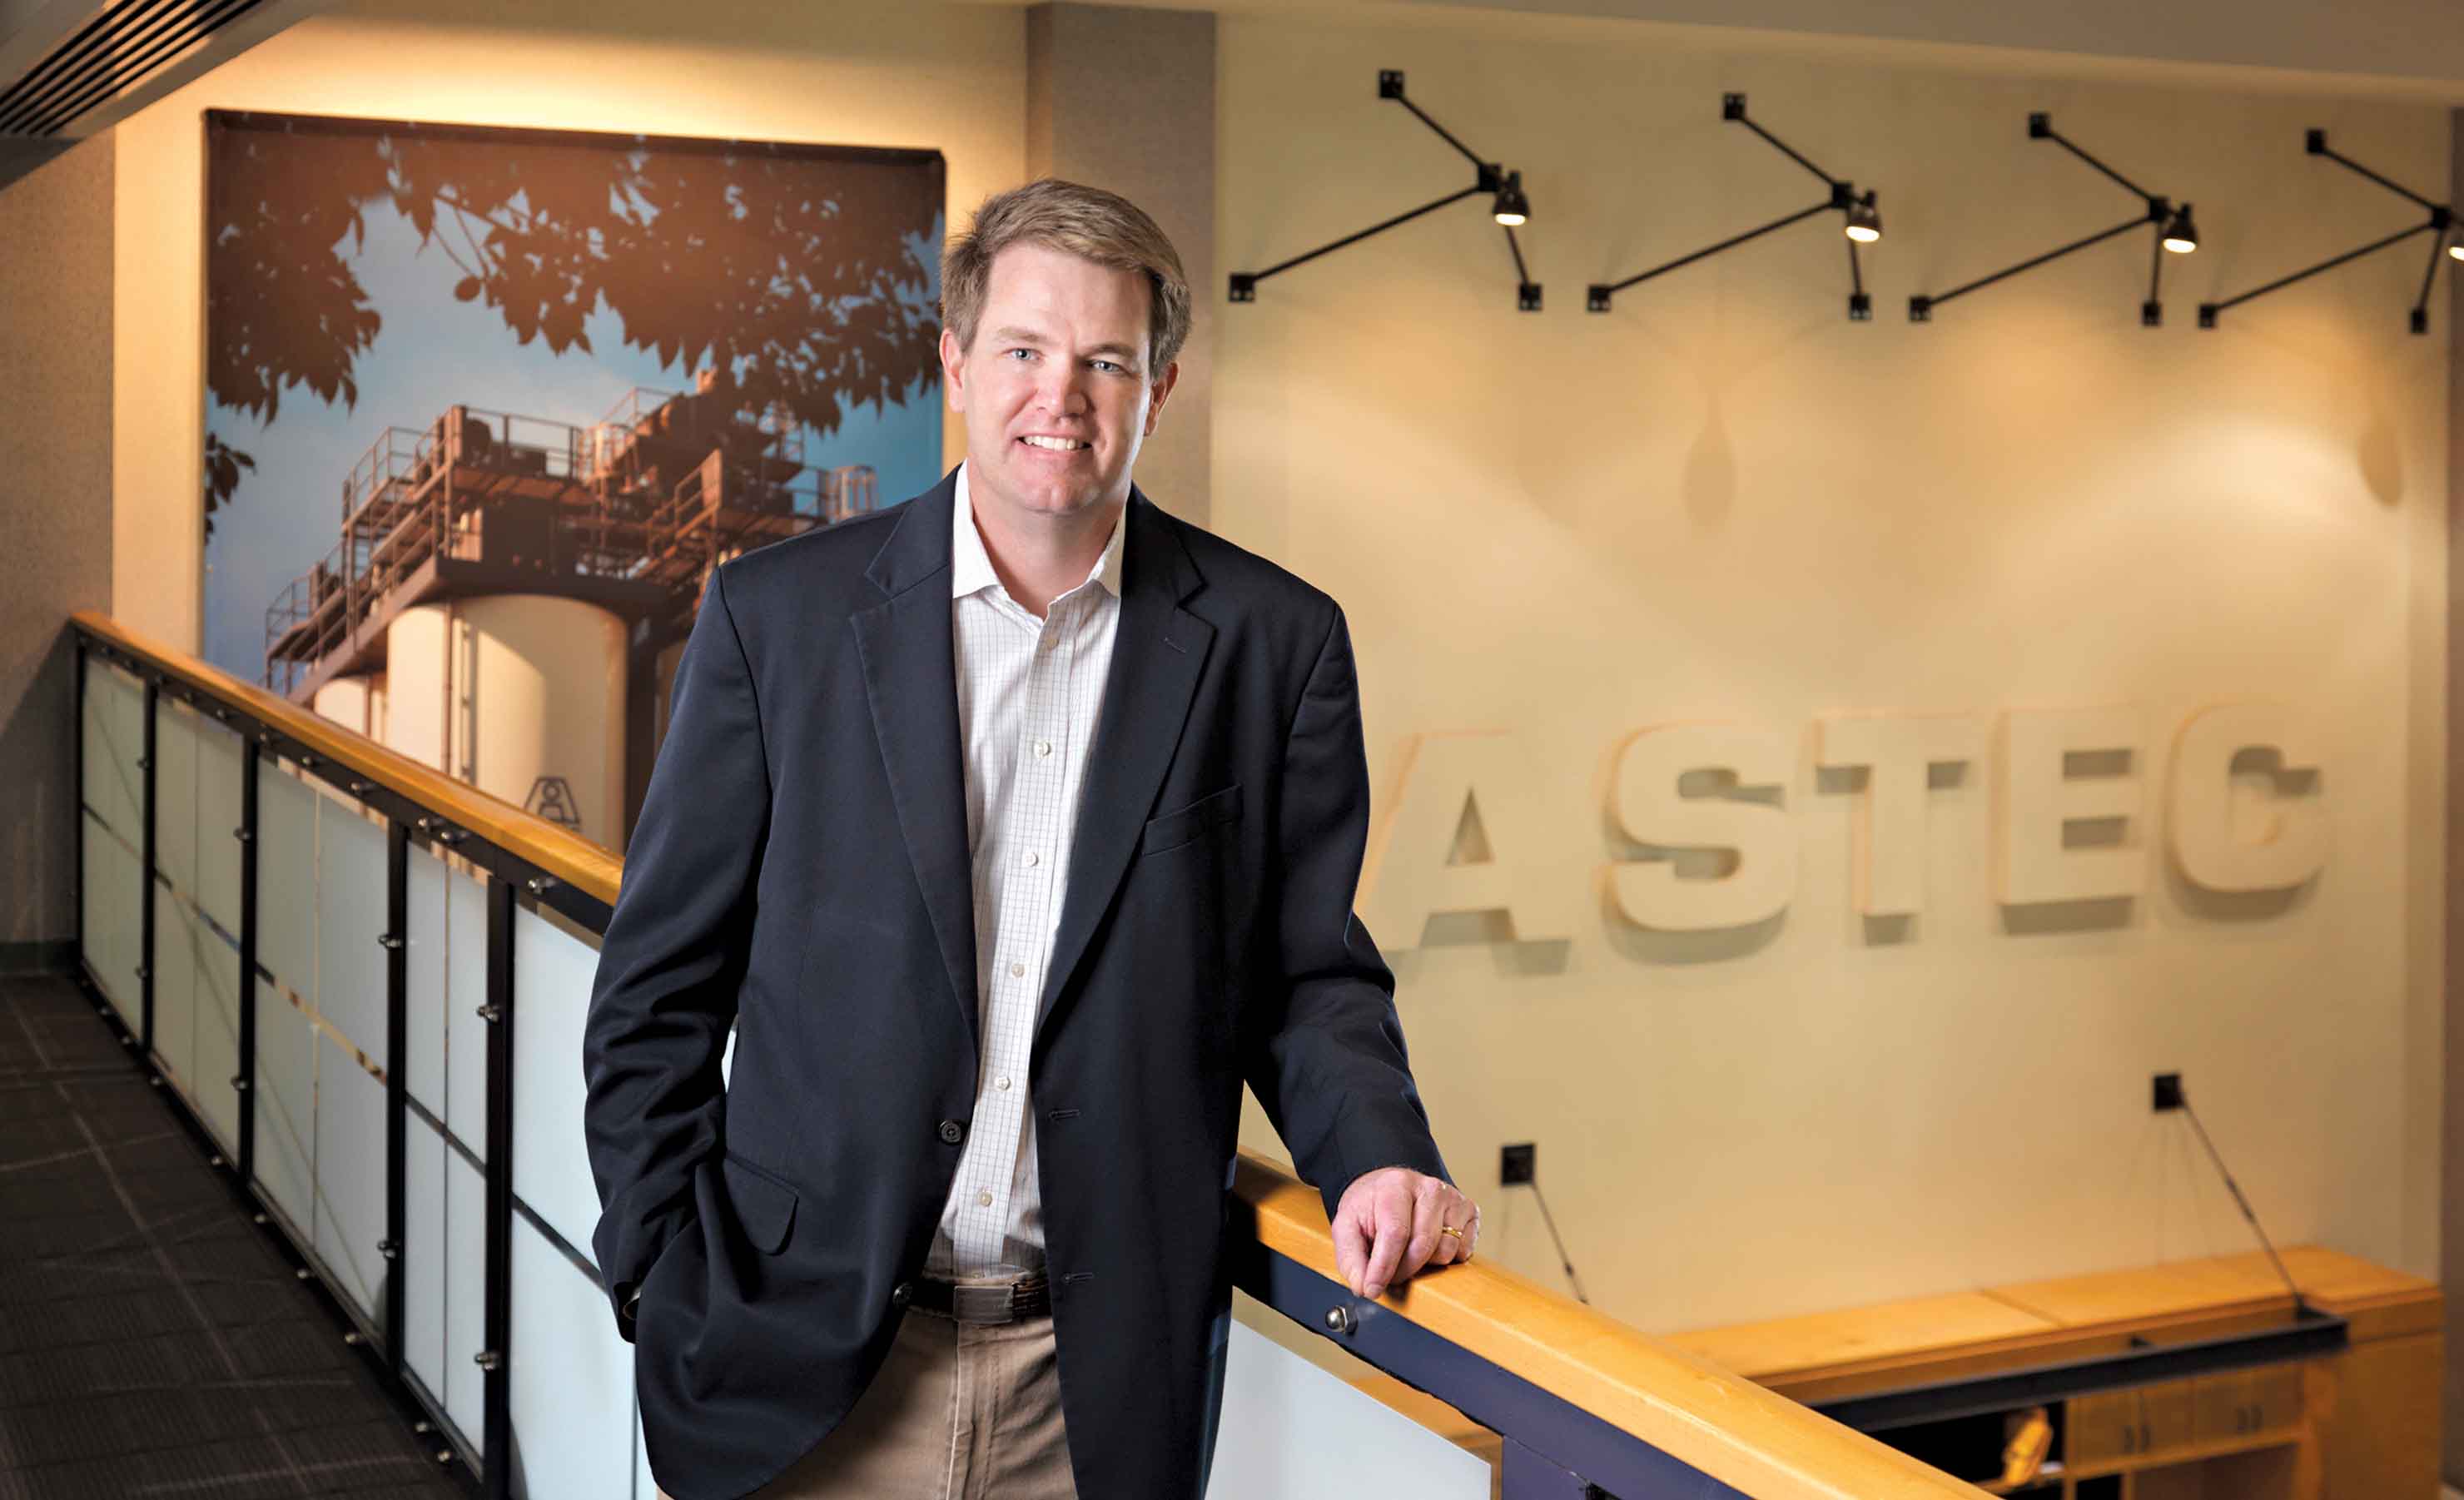 Astec Industries CEO Ben Brock 